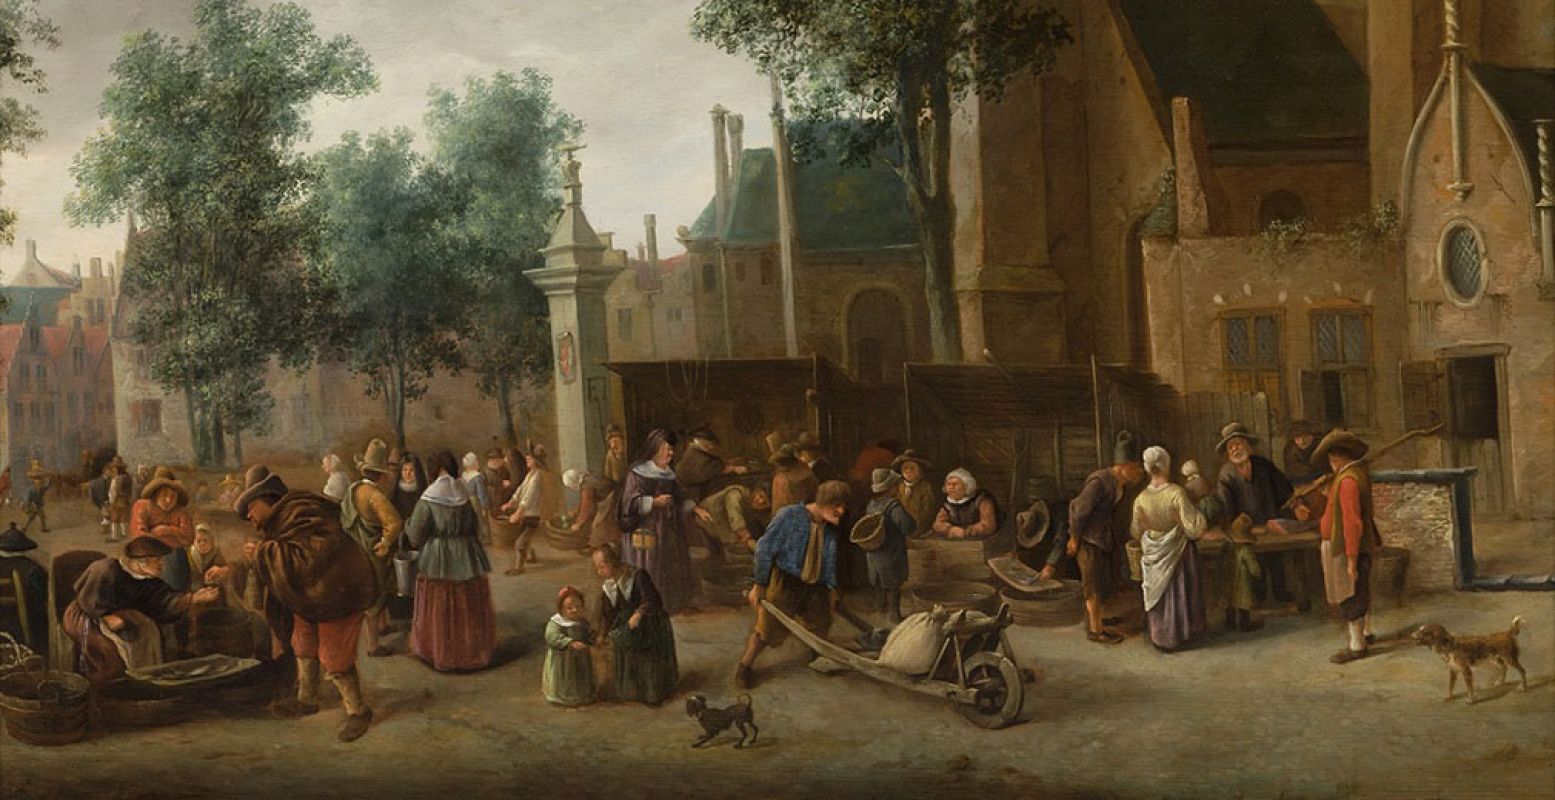 De Riviersvismarkt in Den Haag gezien naar het Westeinde, Jan Steen, ca. 1652. Bijgesneden voor gebruik op DagjeWeg.NL. Foto: Collectie Haags Historisch Museum.